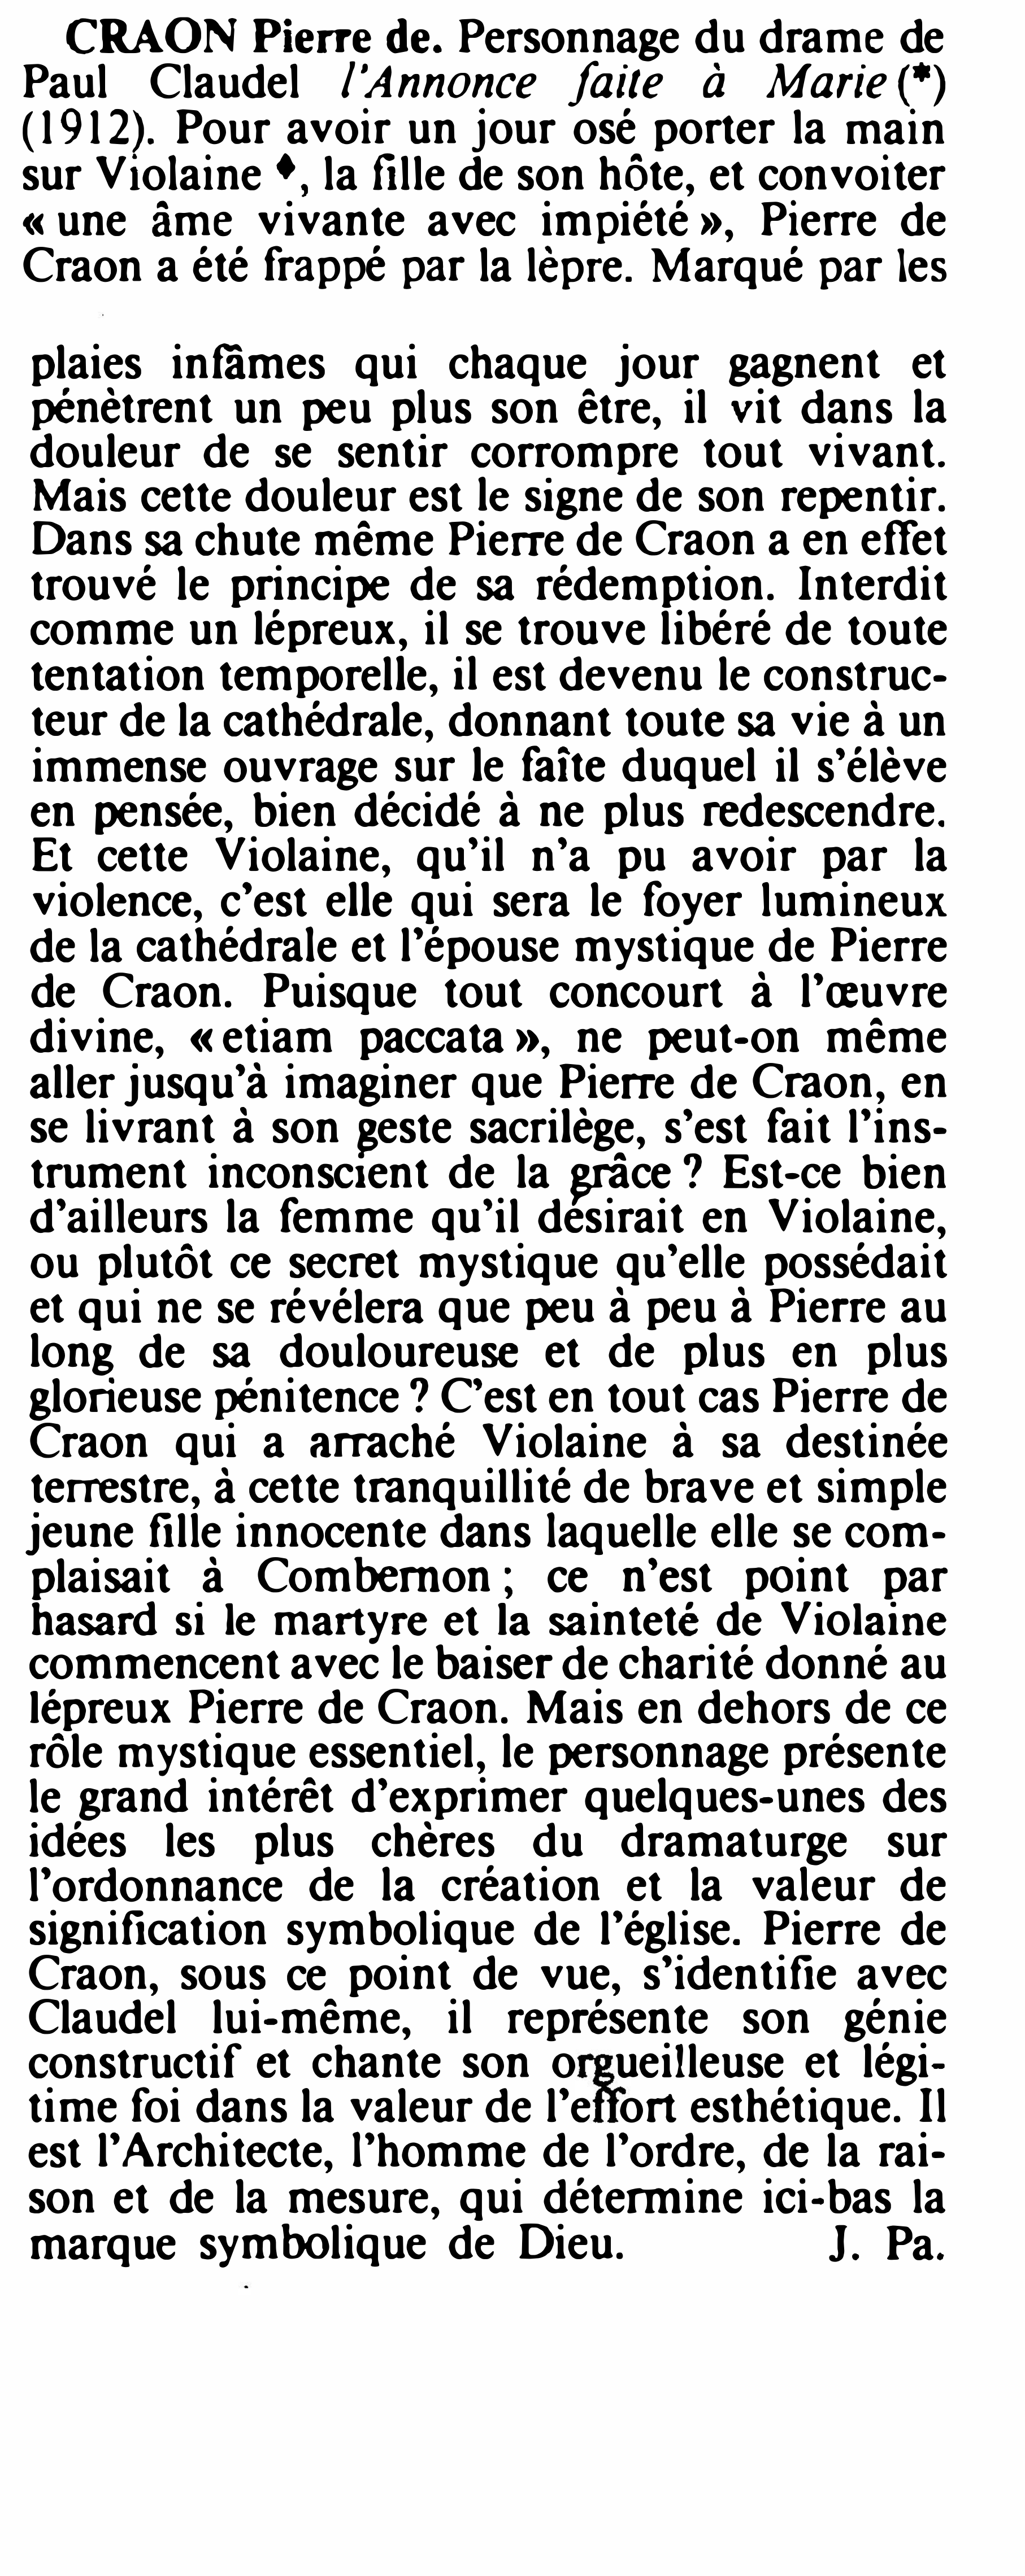 Prévisualisation du document CRAON Pierre de Paul Claudel l'Annonce faite à Marie